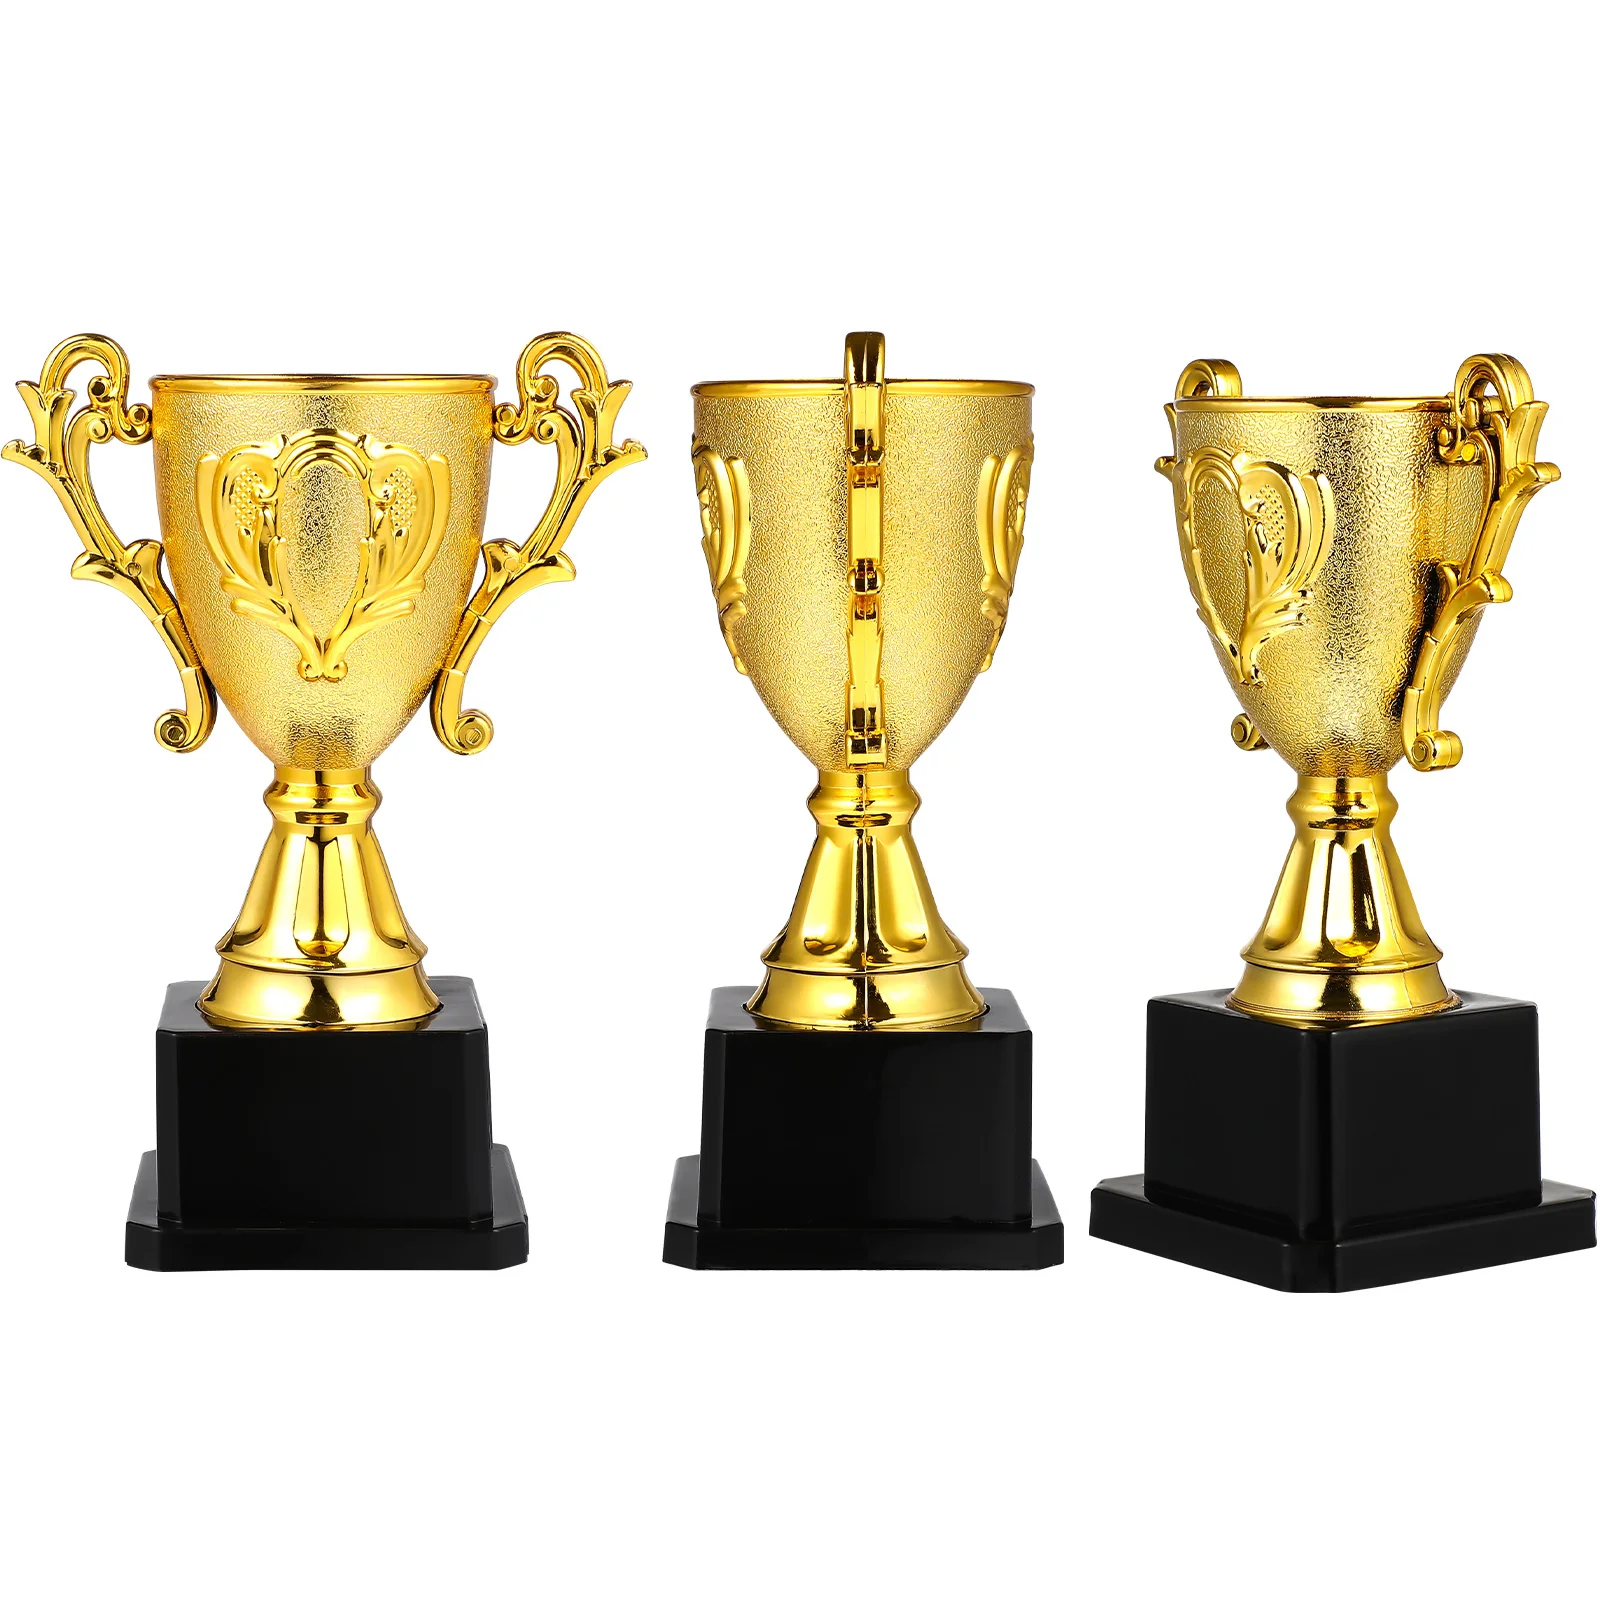 Trofeje Nagrado Pokal Zlata Plastičnih Zmagovalec Skodelice Mini Zlati Pokal Otroci Nagrade Darilo Otrok Nagrado Igrača Košarka